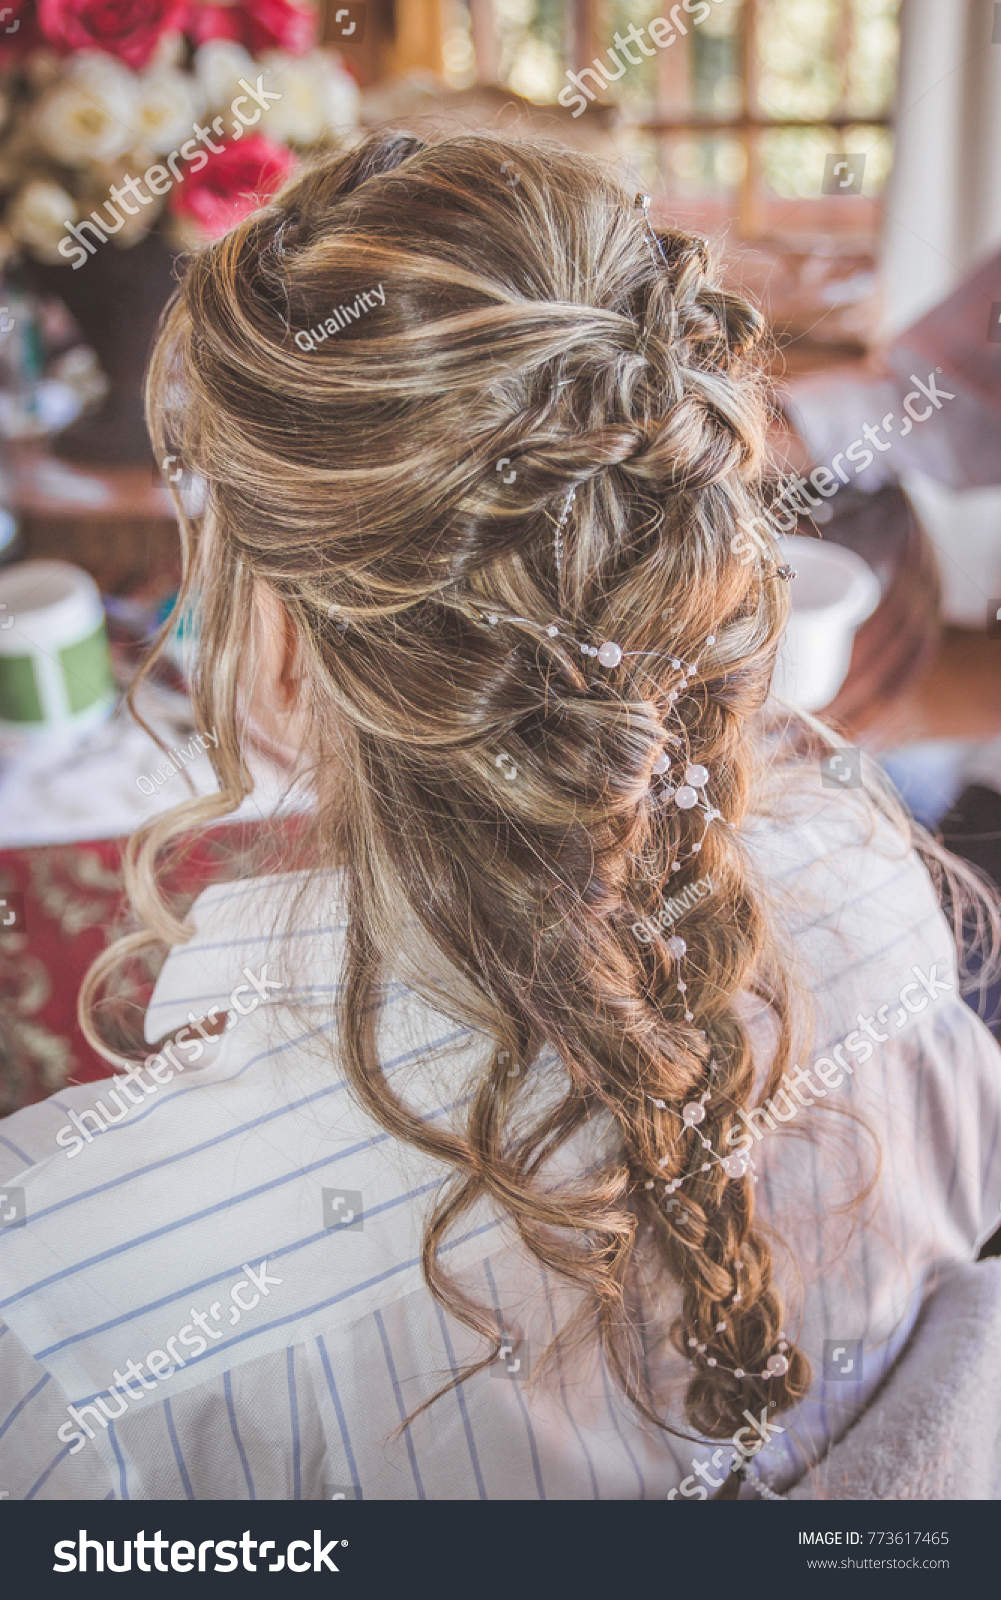 Bride French Braid Hairstyle Wedding Hairdo Stock Photo